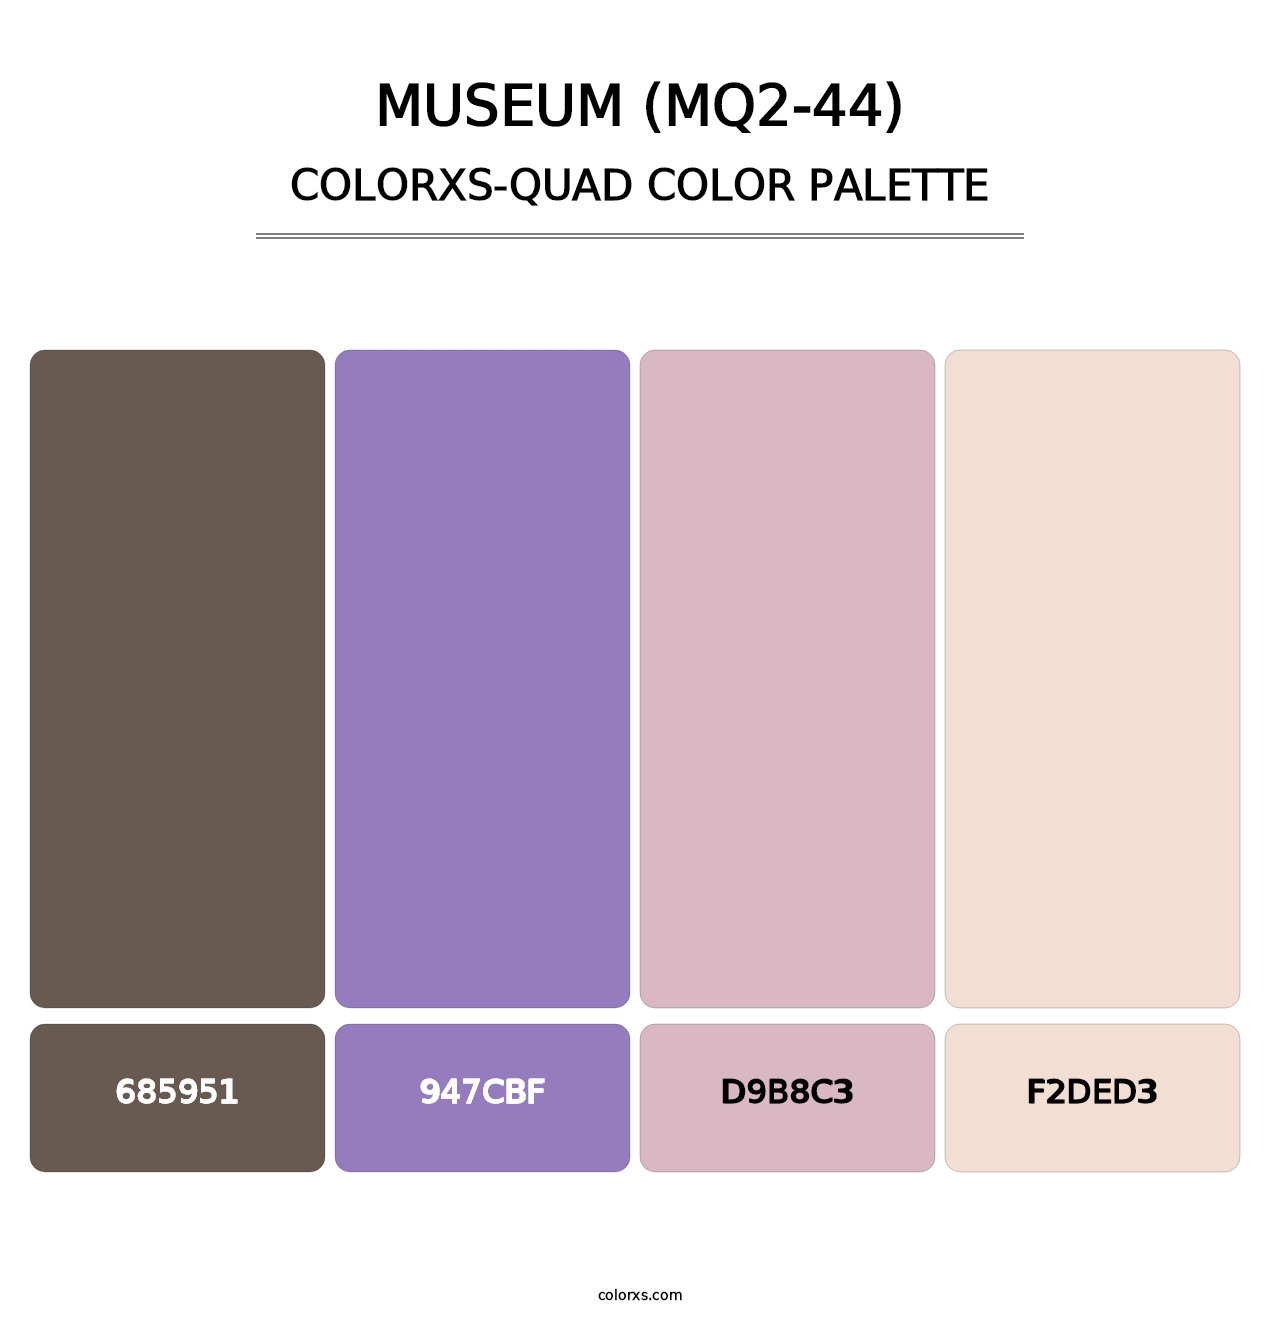 Museum (MQ2-44) - Colorxs Quad Palette